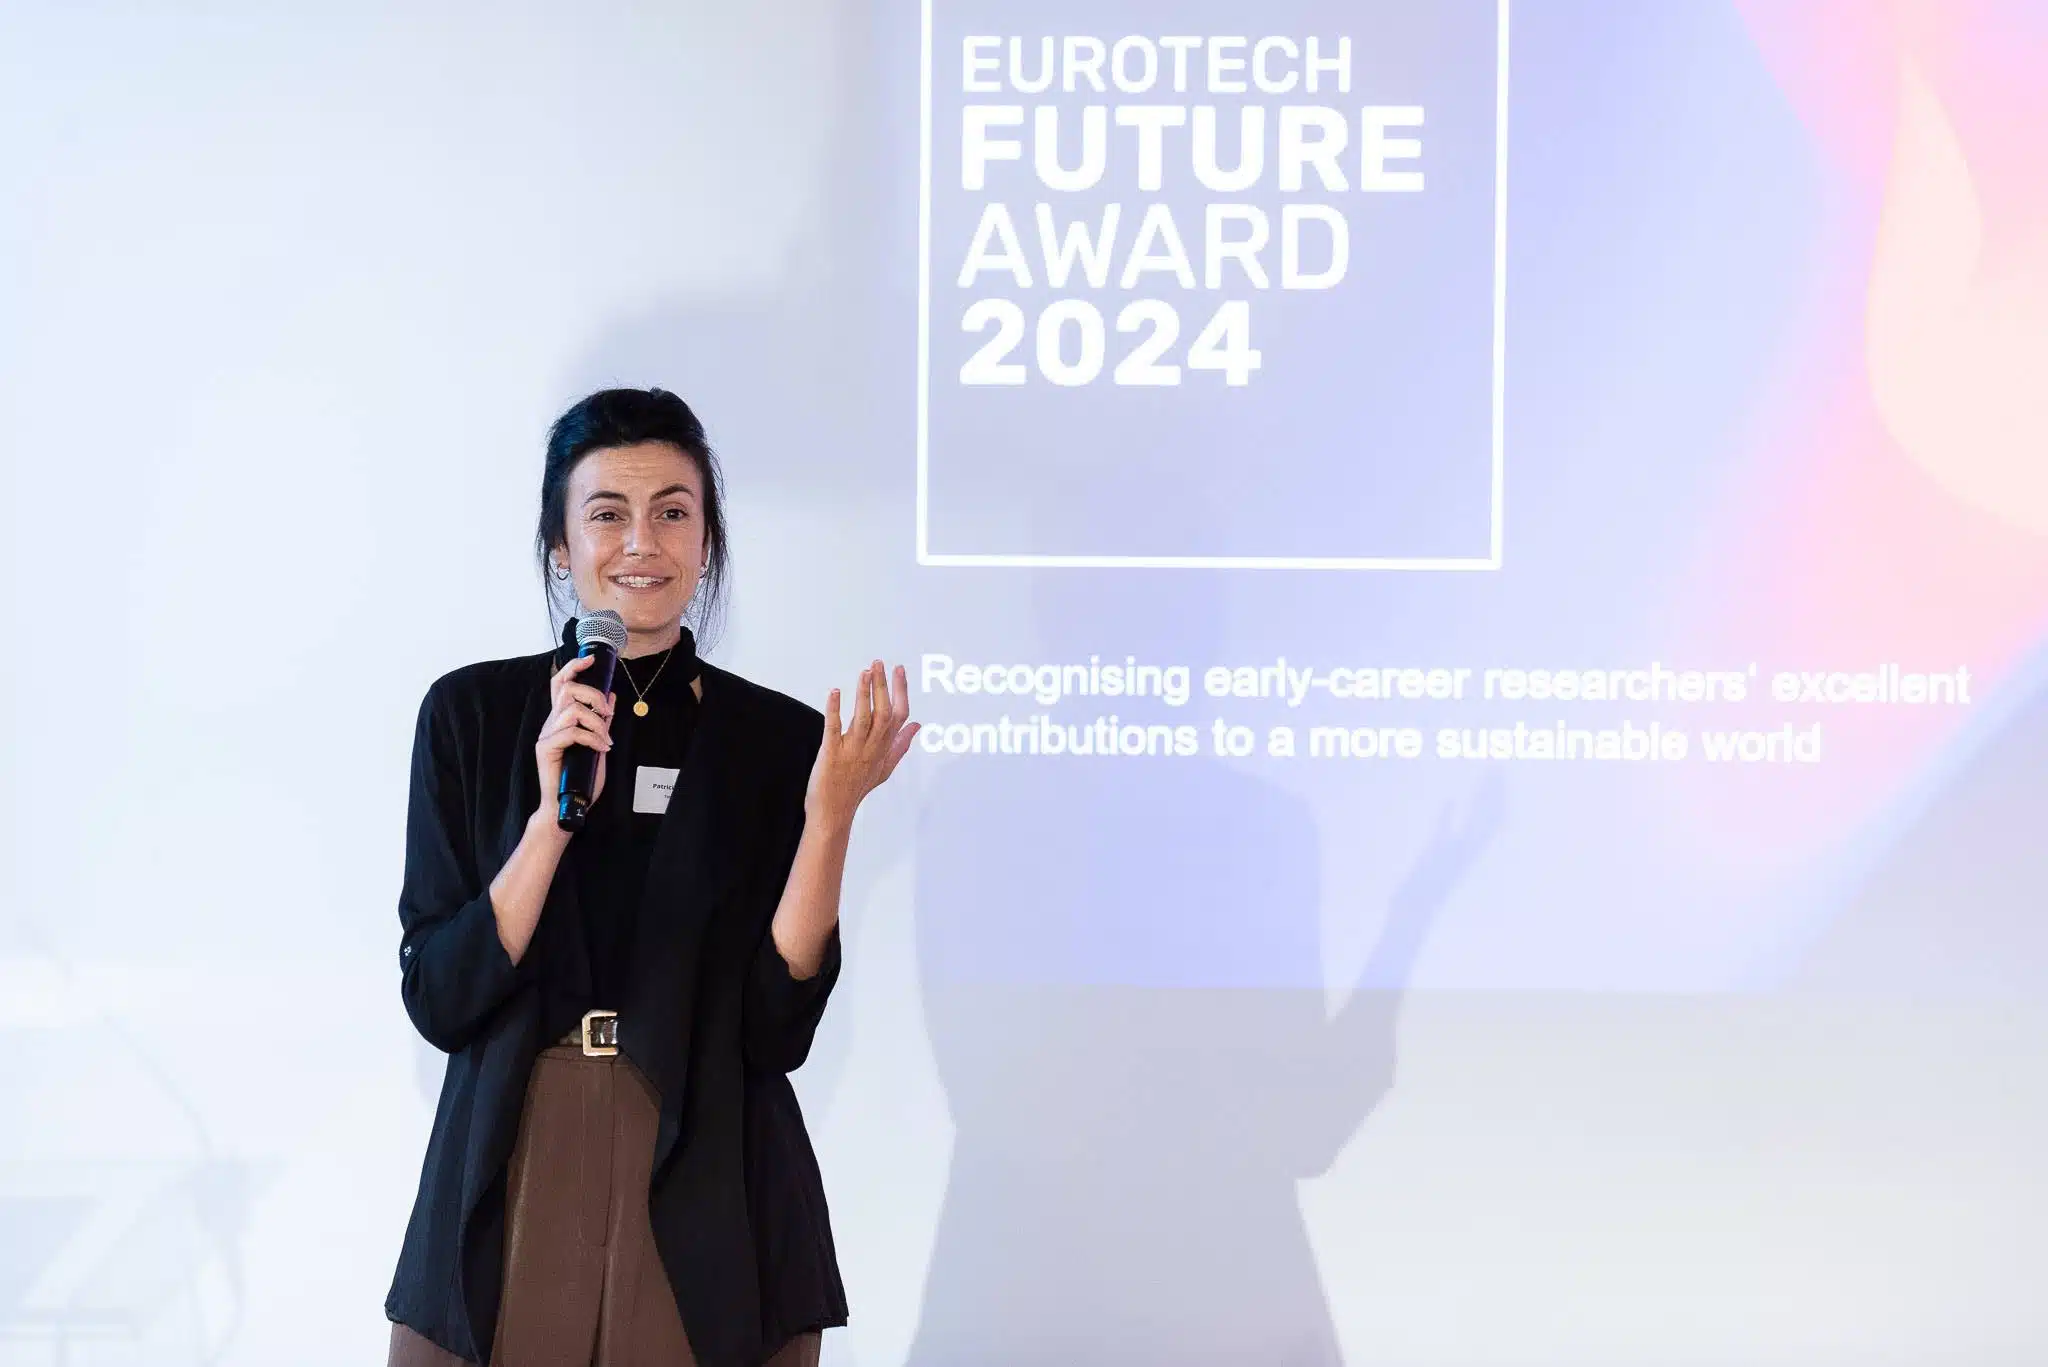 ד"ר פטריסיה מורה-ריימונדו במעמד קבלת הפרס. קרדיט: EuroTech Universities Alliance

